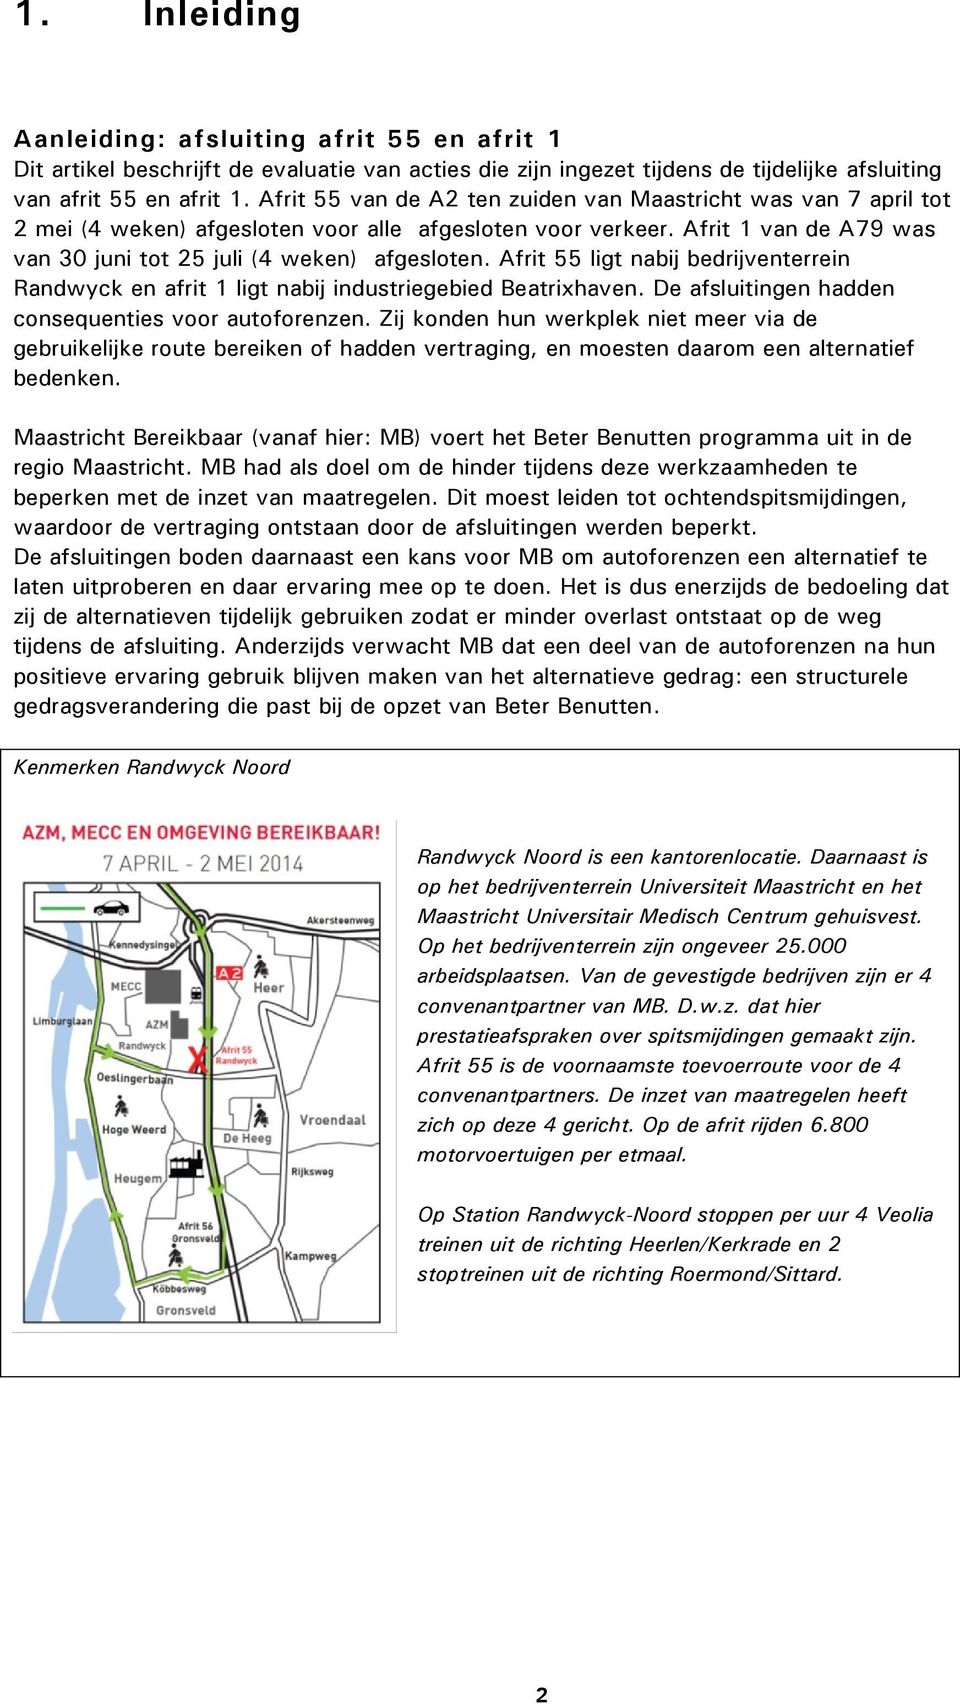 Afrit 55 ligt nabij bedrijventerrein Randwyck en afrit 1 ligt nabij industriegebied Beatrixhaven. De afsluitingen hadden consequenties voor autoforenzen.